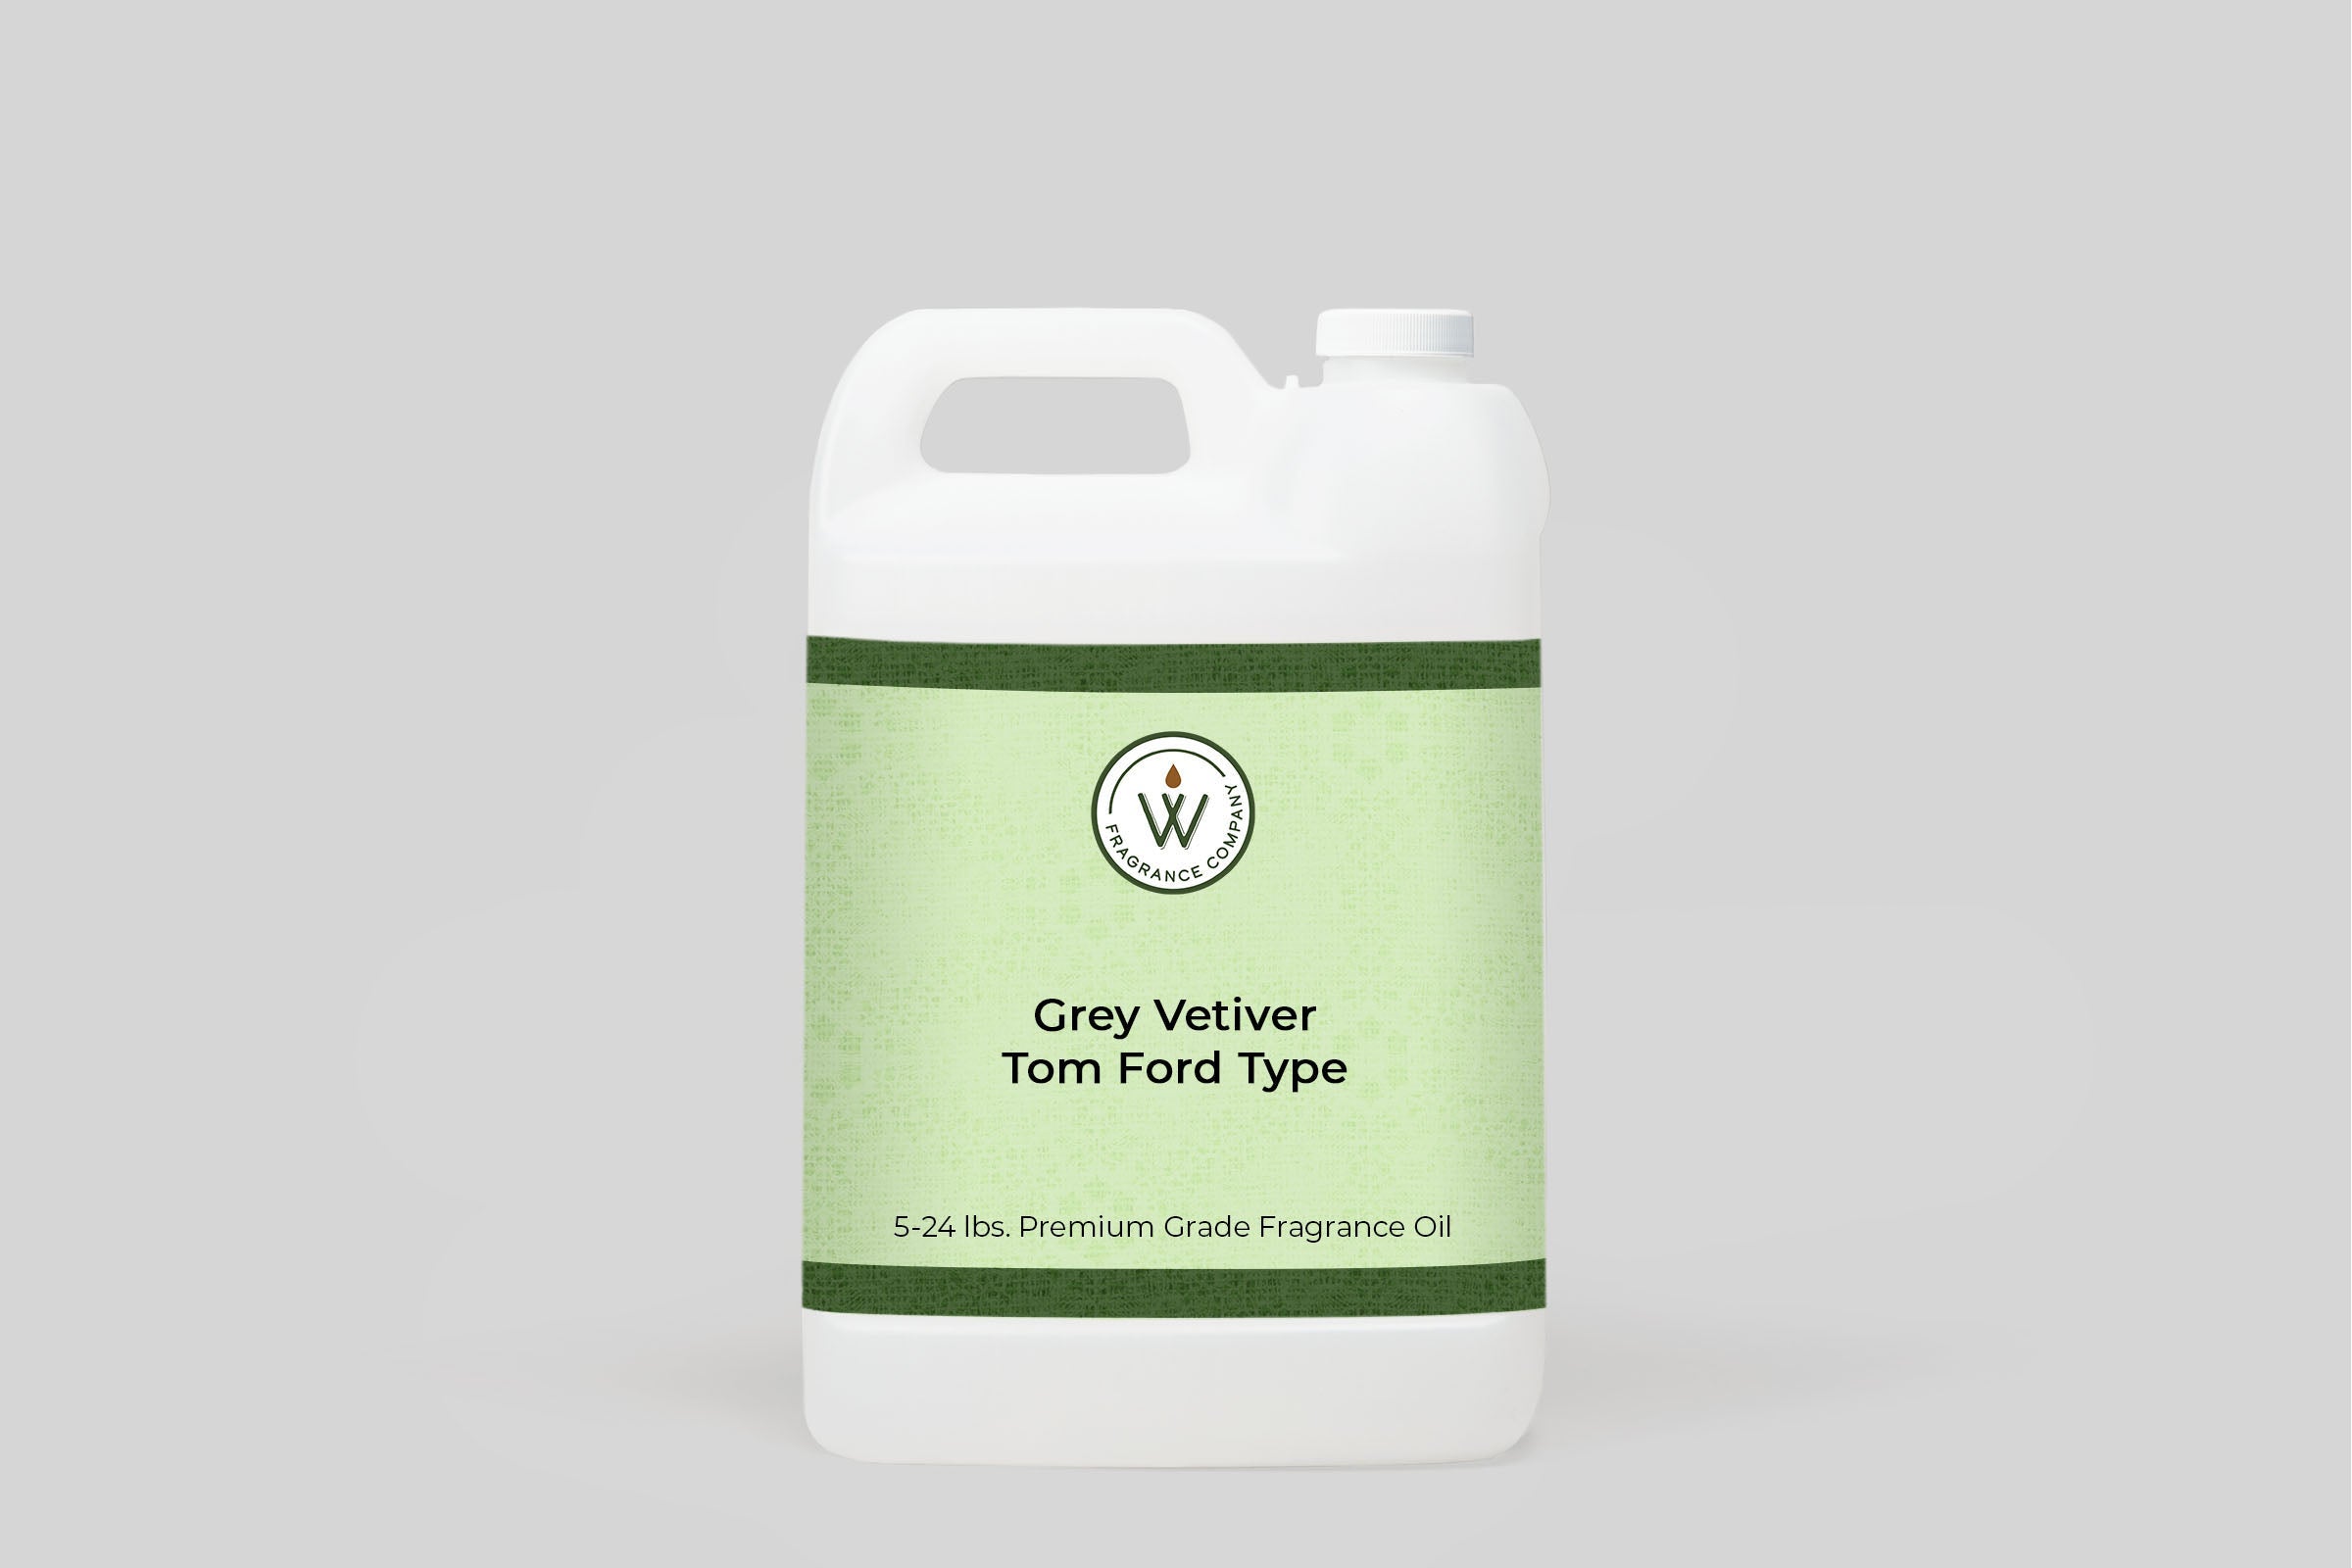 Grey Vetiver Tom Ford Type Fragrance Oil